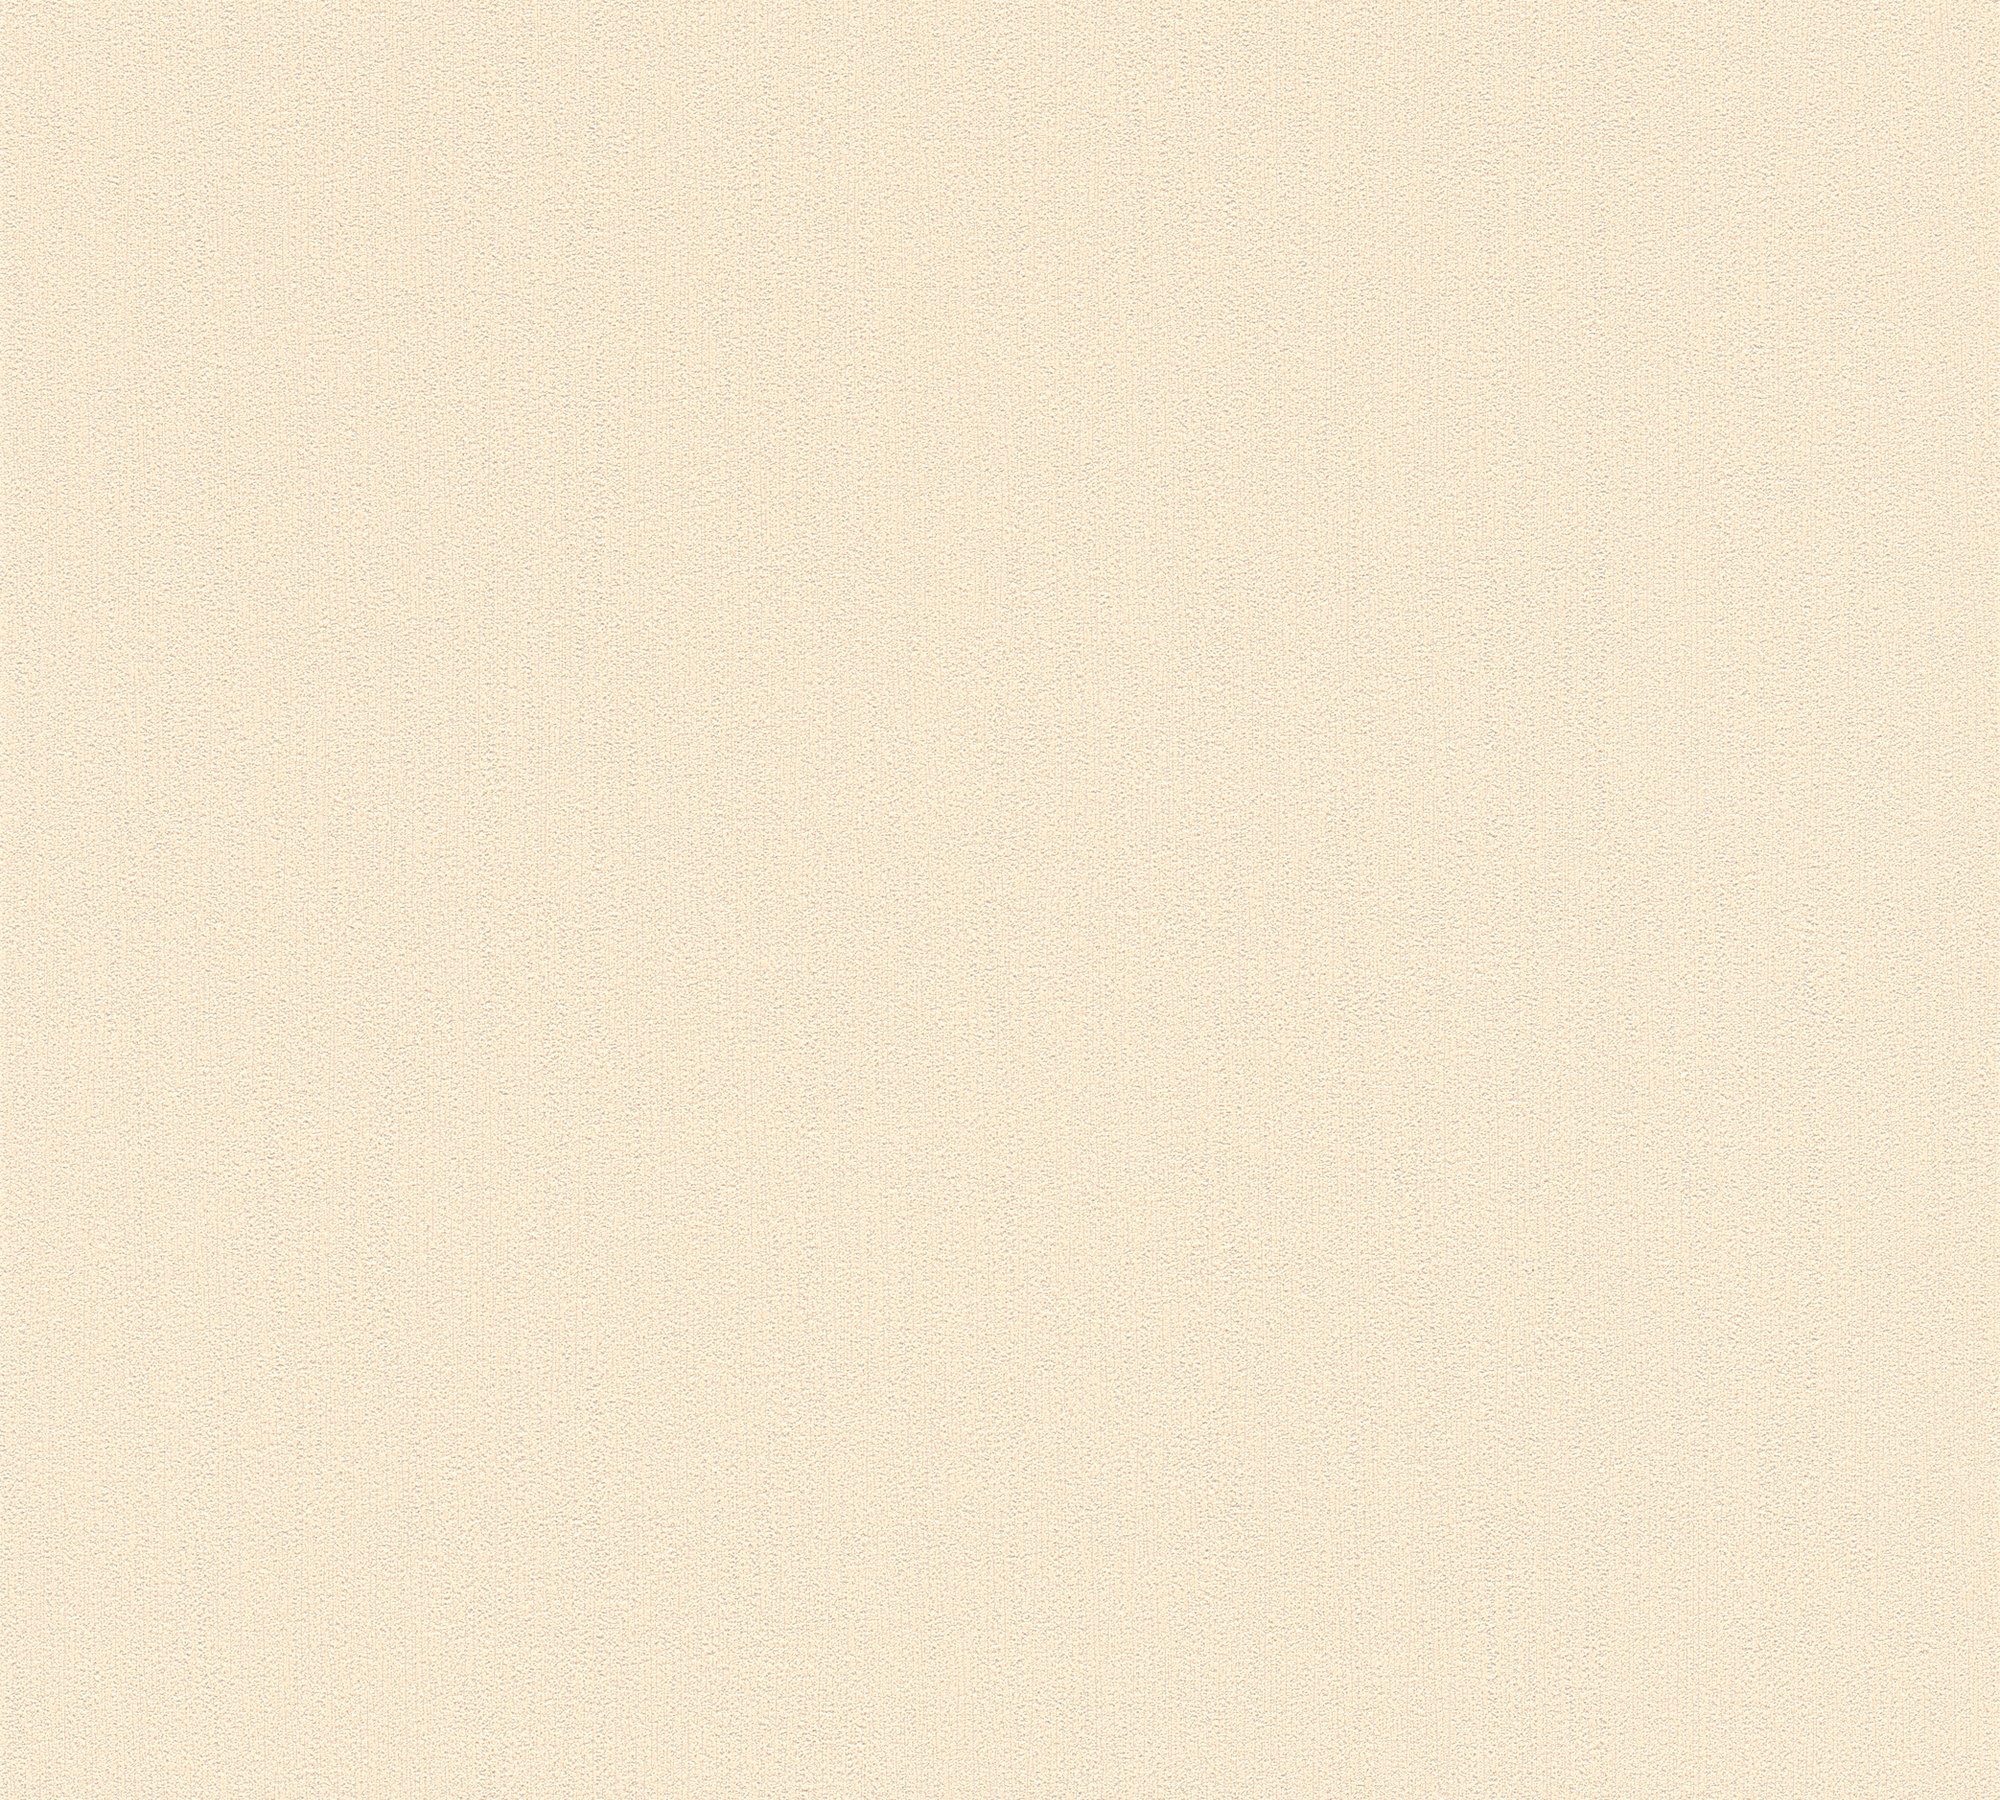 Plain, A.S. Paper beige/creme Vliestapete Einfarbig einfarbig, unifarben, Uni Architects Création Tapete